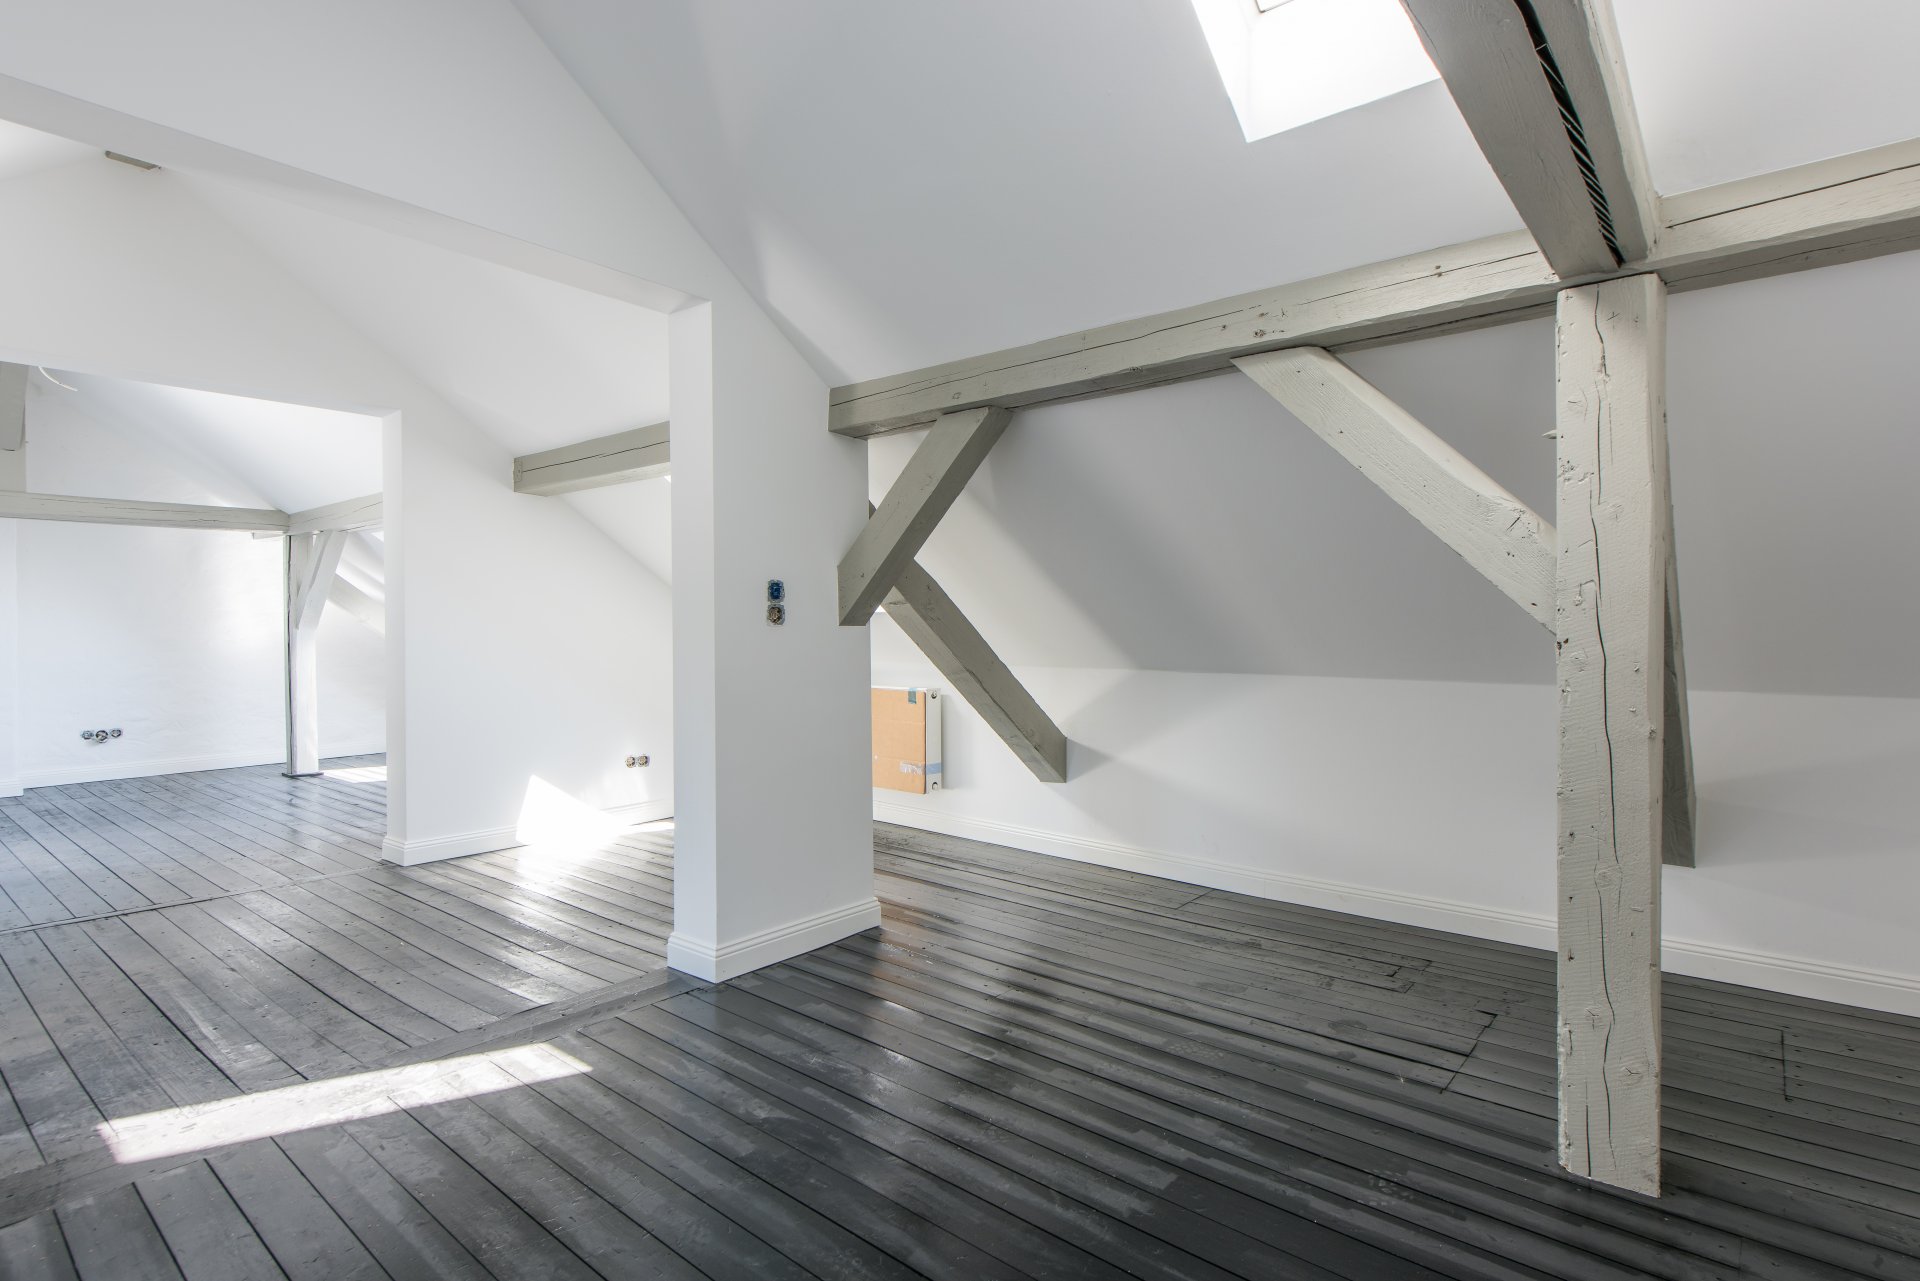 Dachstudio für die Jugend - Oliver Reifferscheid - Immobilienmakler Darmstadt